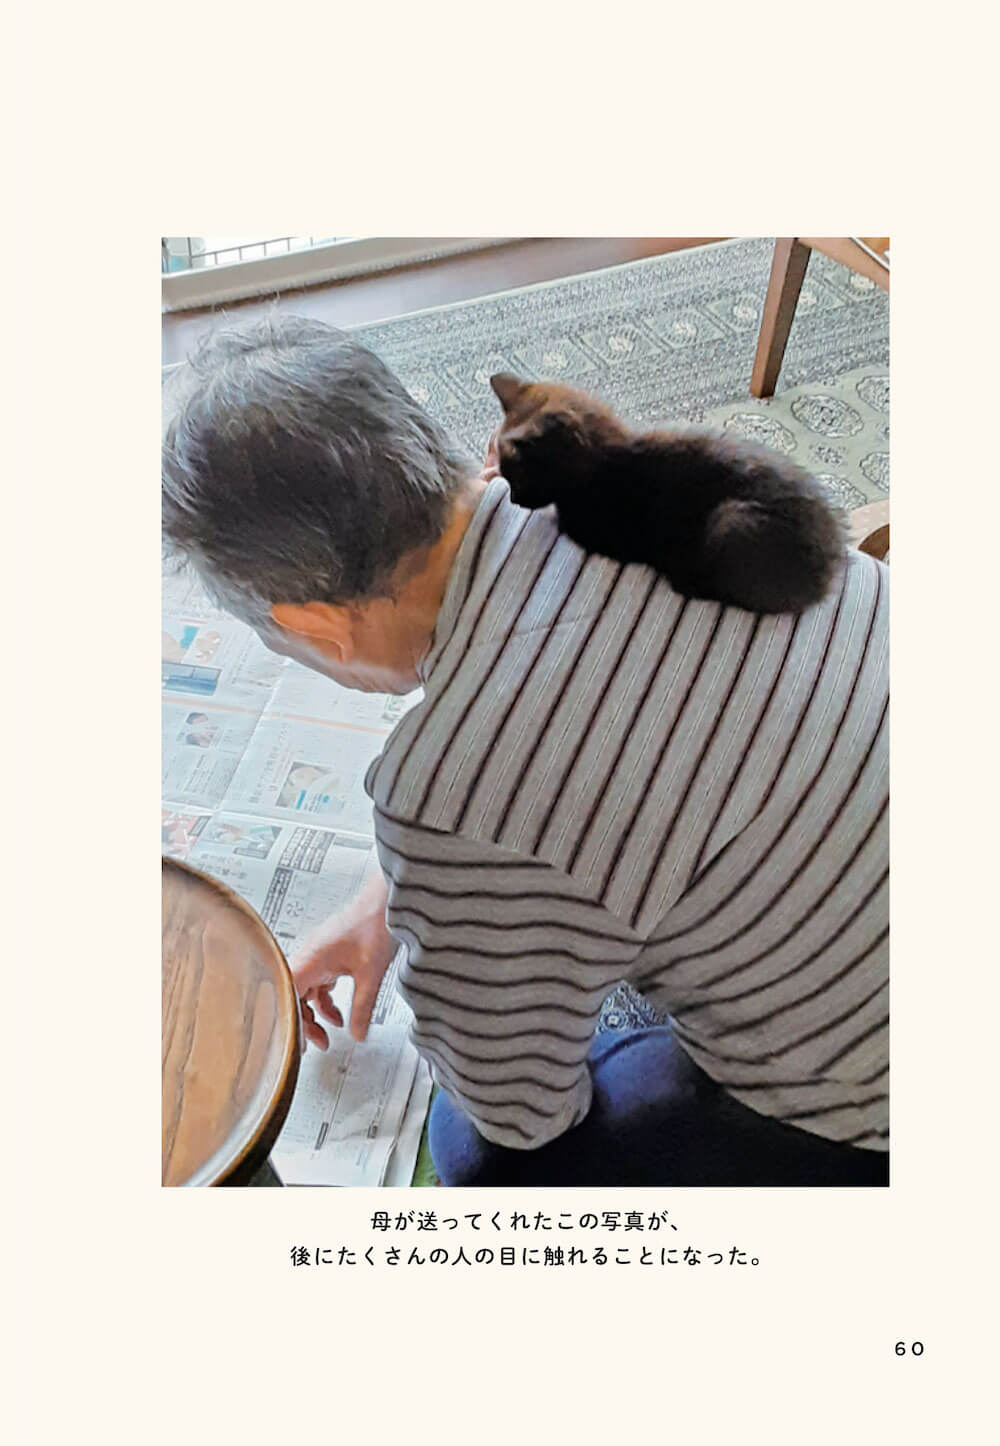 親父と猫が一緒に新聞を読む日課を紹介したページ by 『親父と猫　定年後に待っていた猫ライフ』